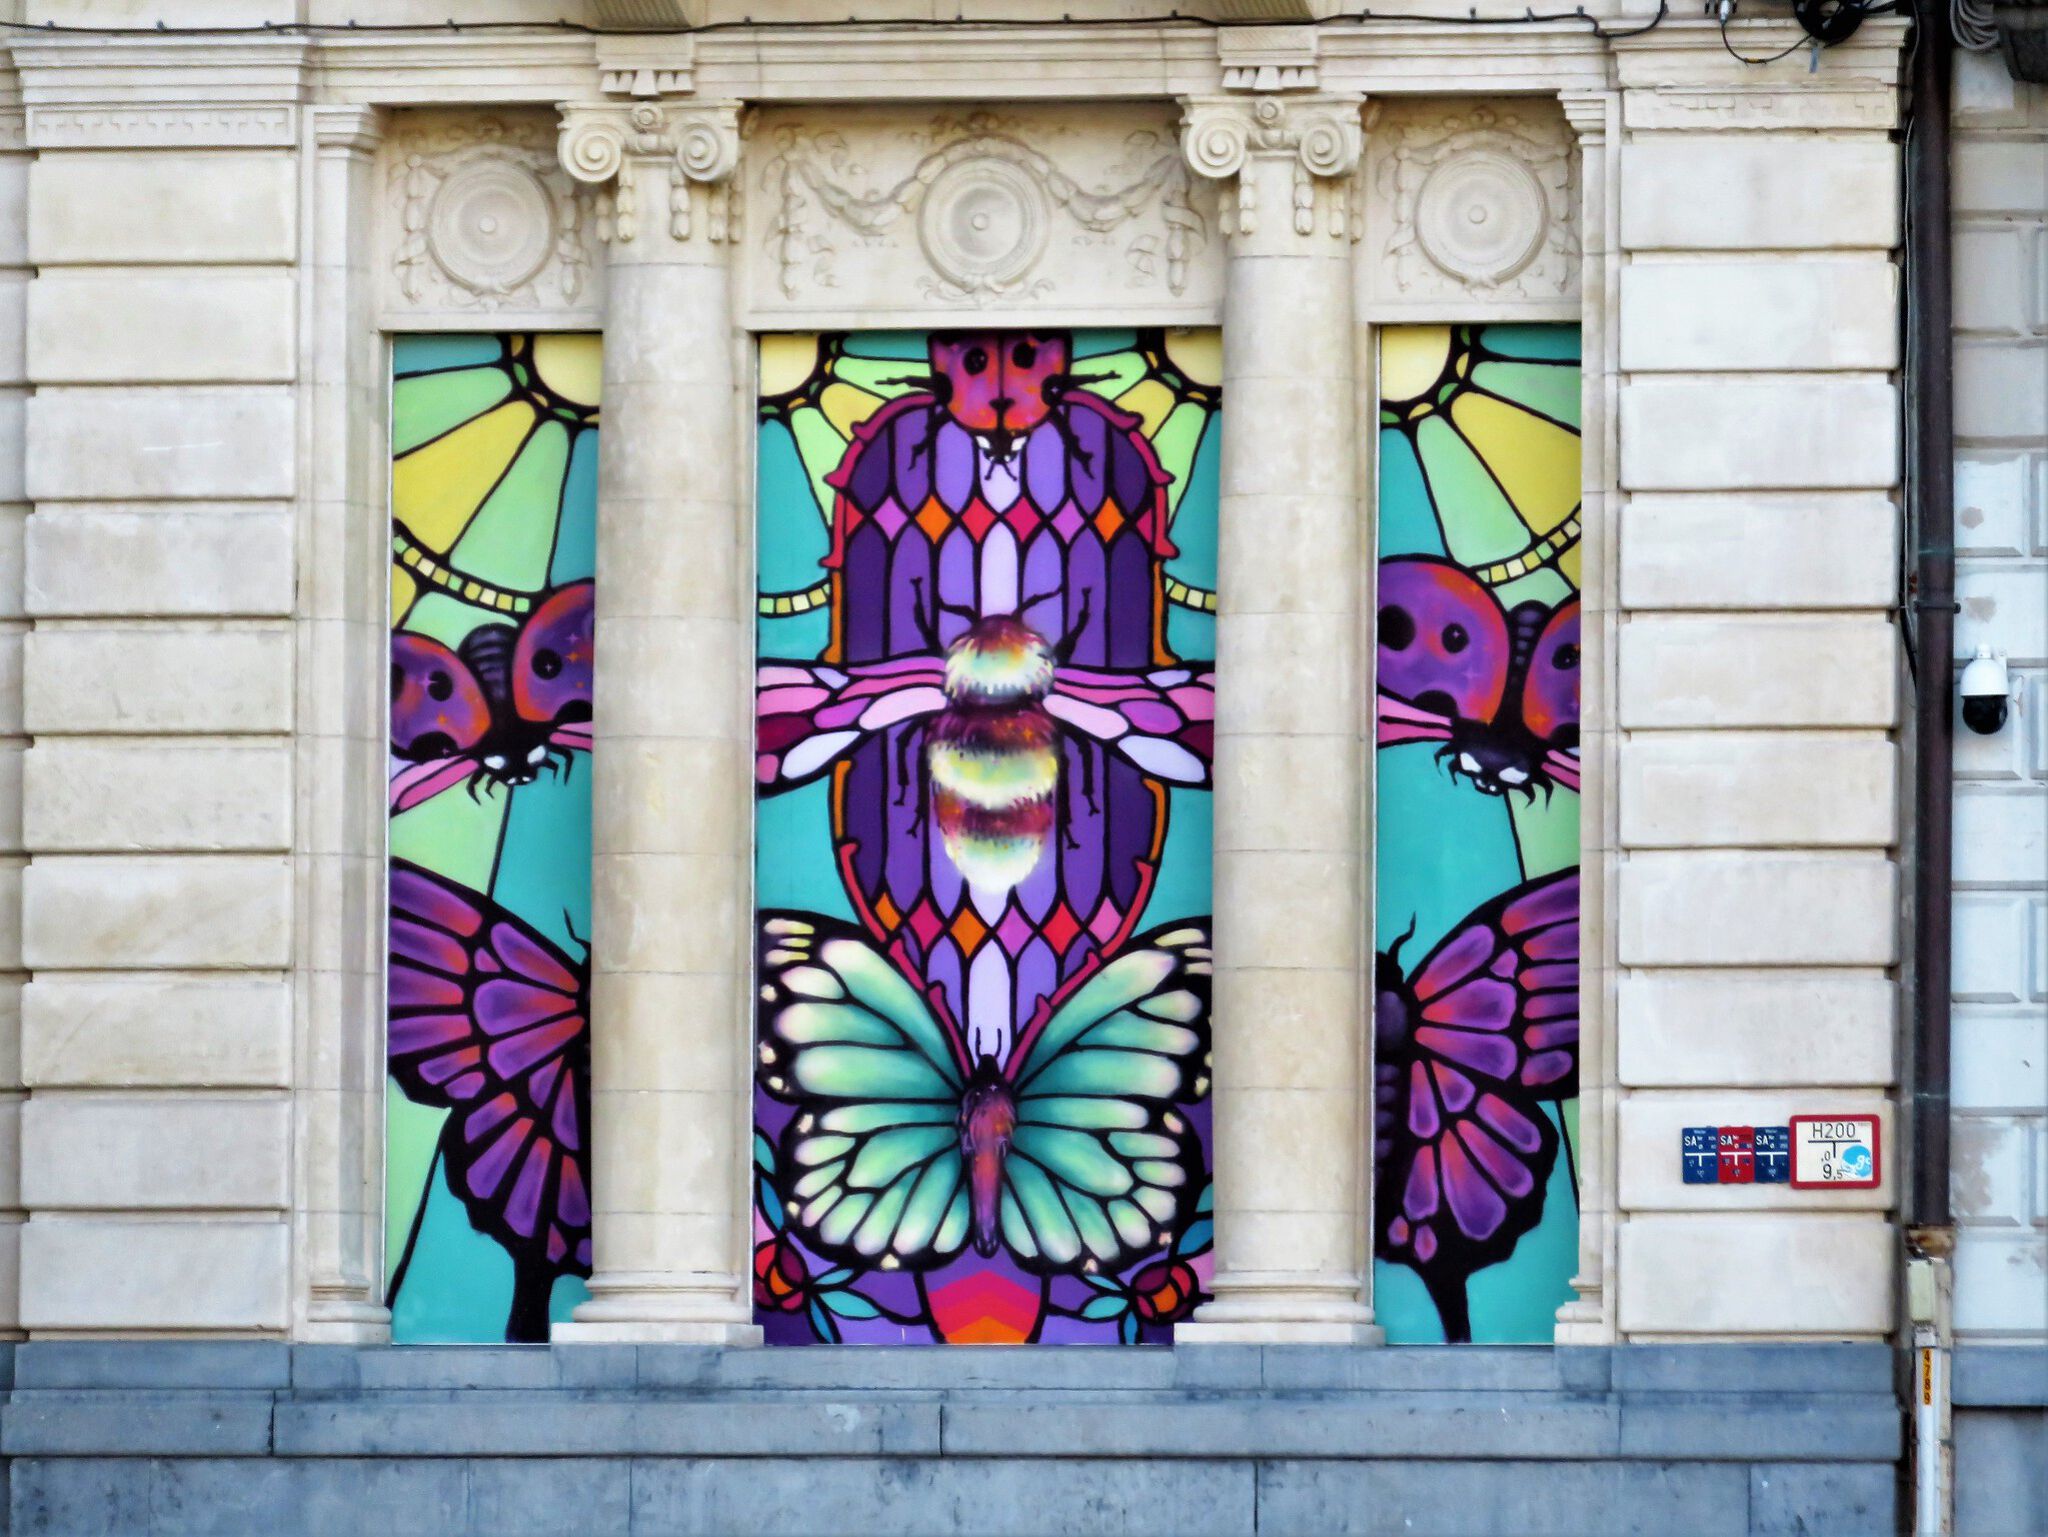 Xuas, Huascaya&mdash;Stained glass graffiti